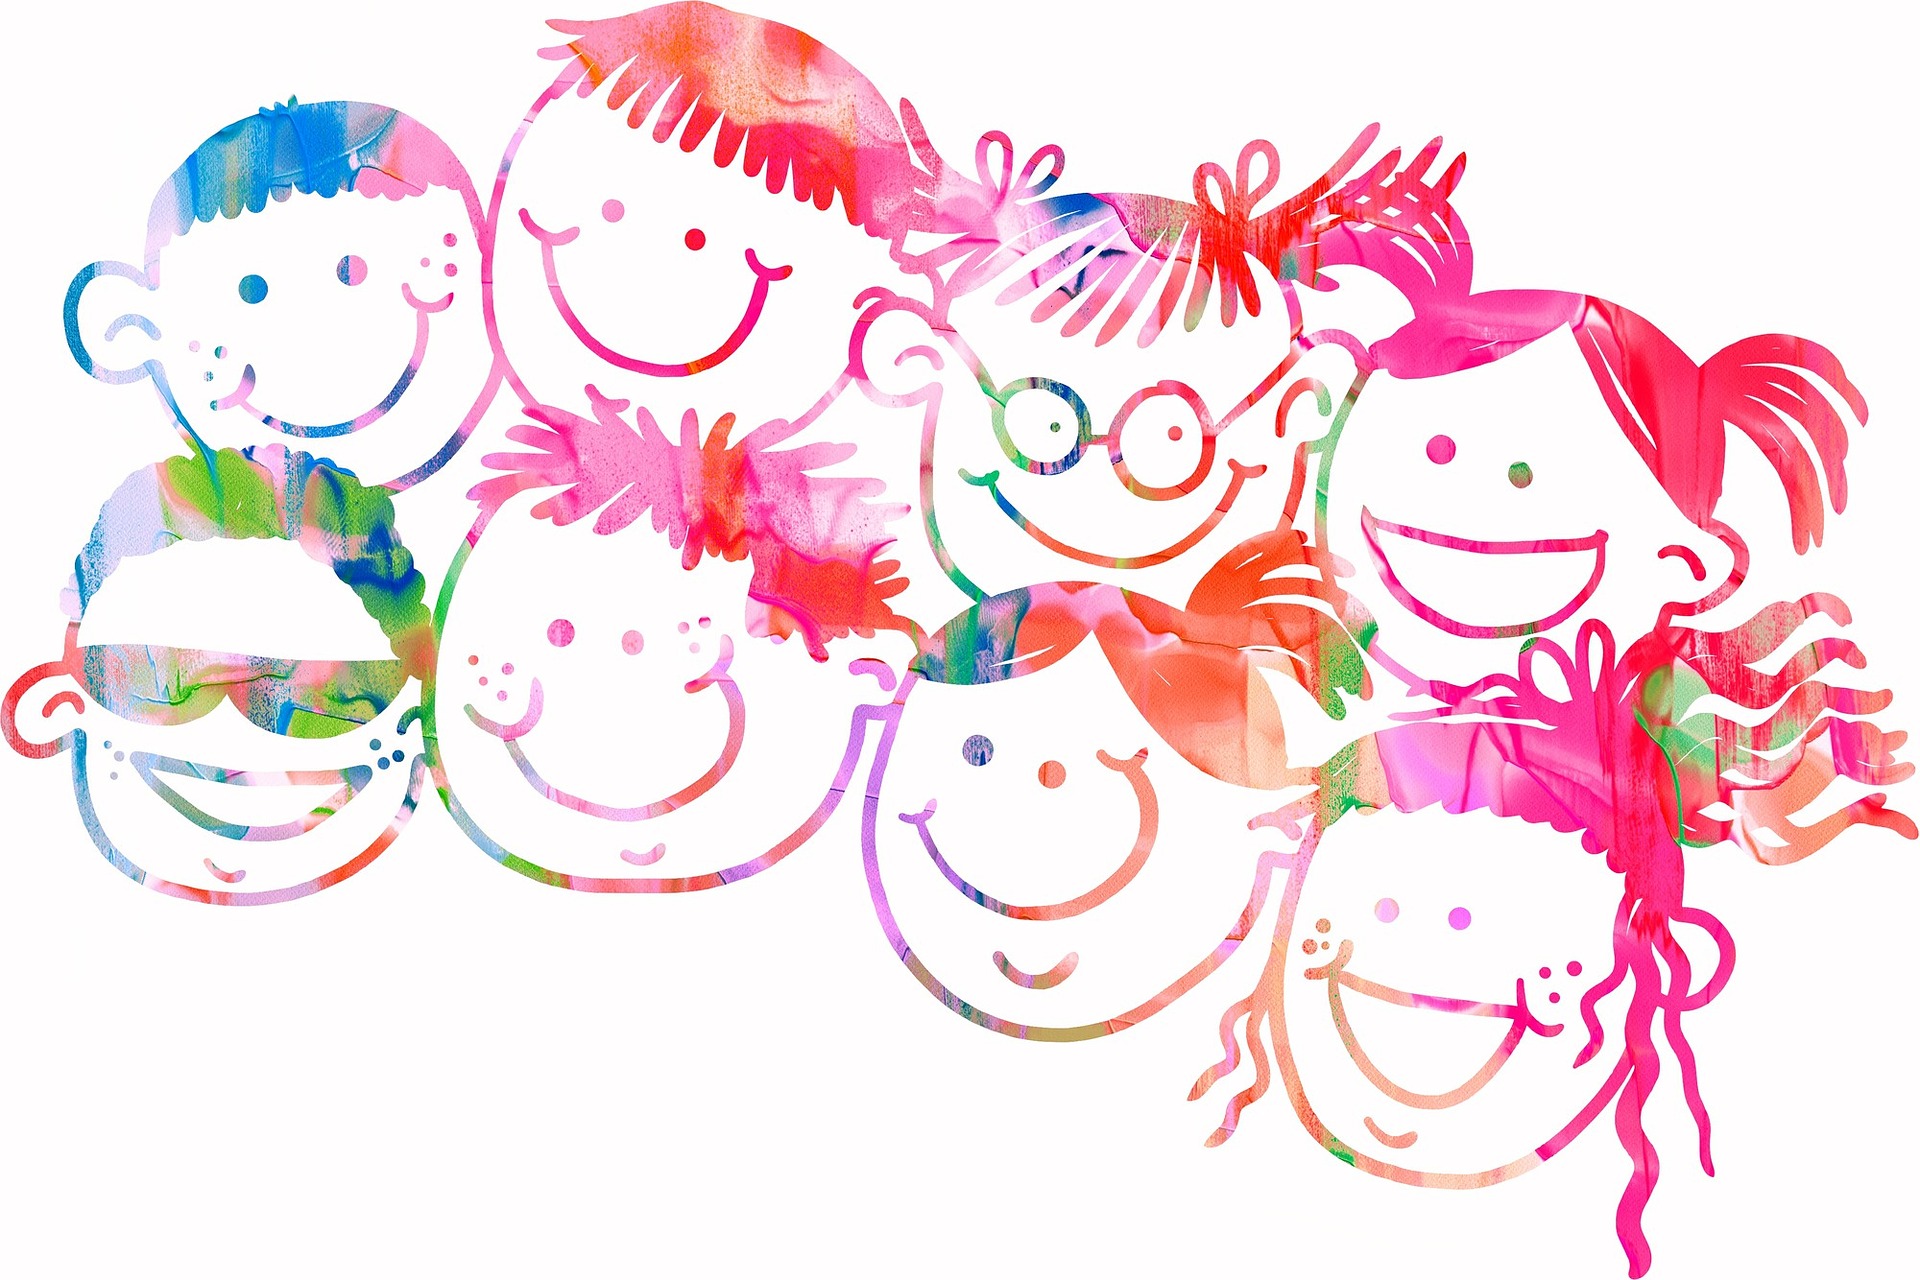 Zwei Reihen gezeichnete farbige Kindergesichter, in jeder Reihe sind es vier, alle lächeln oder lachen.